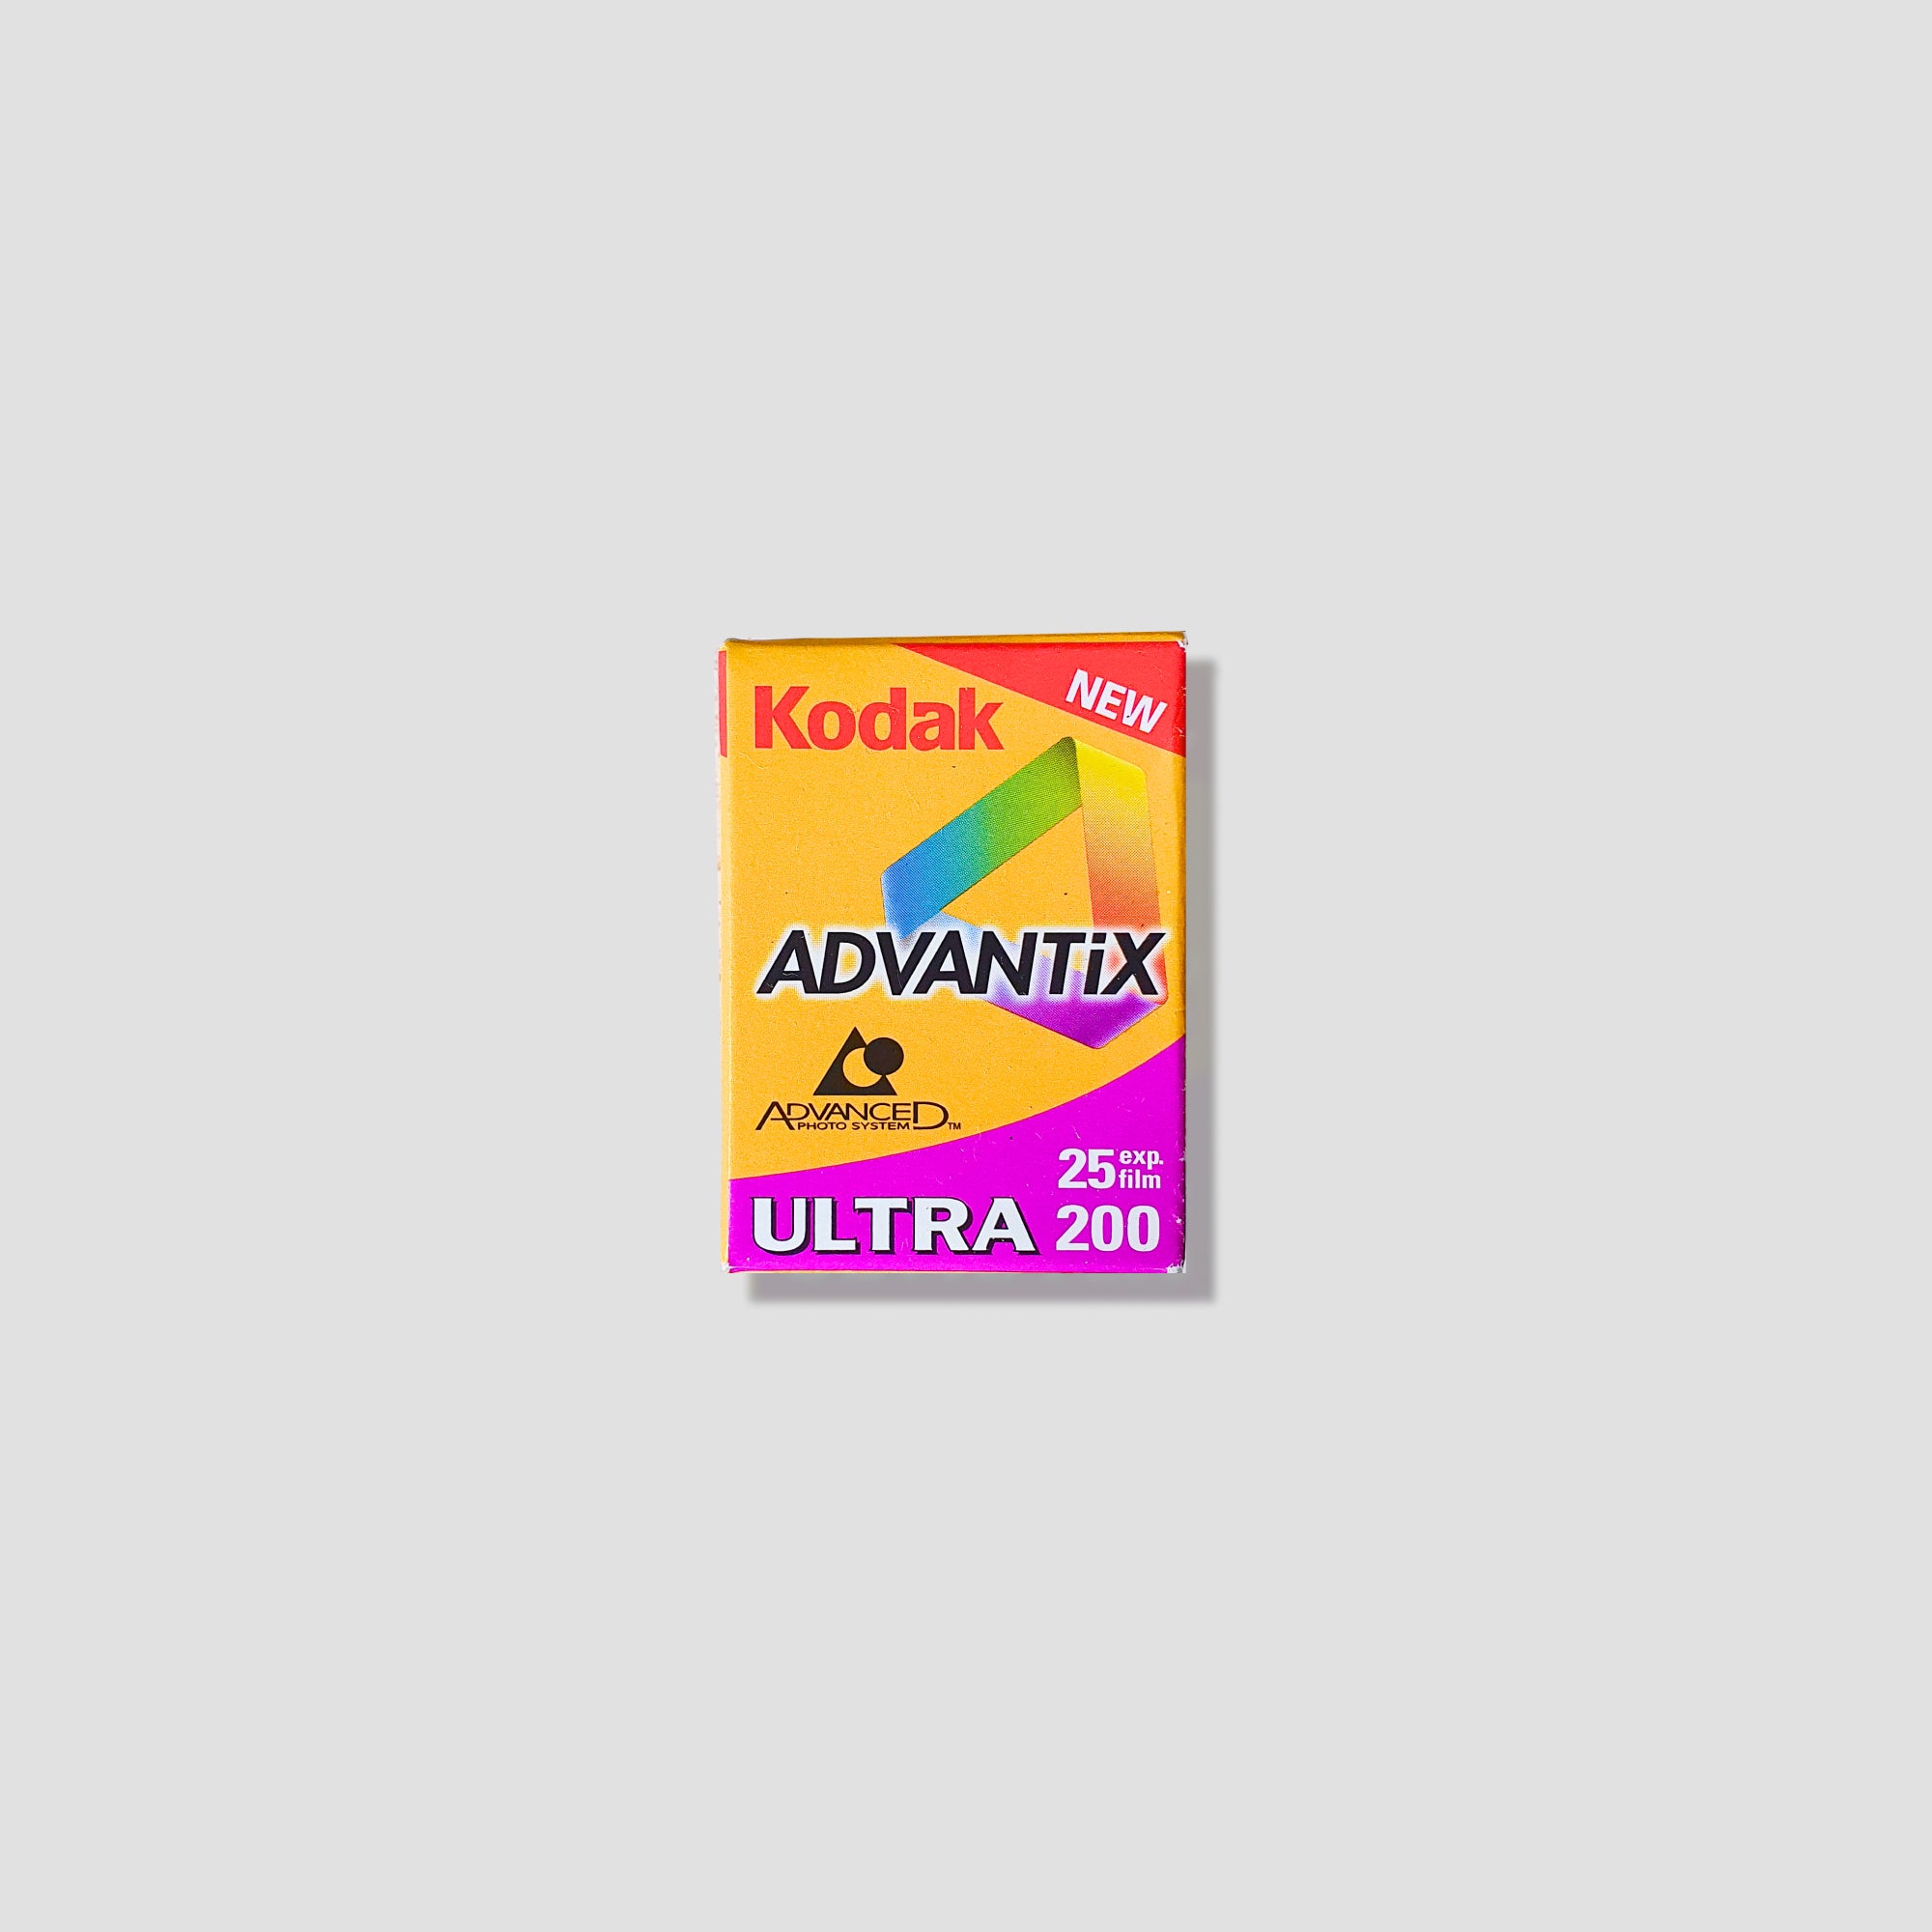 Buy Kodak Advantix Ultra 200 (APS) now at Analogue Amsterdam